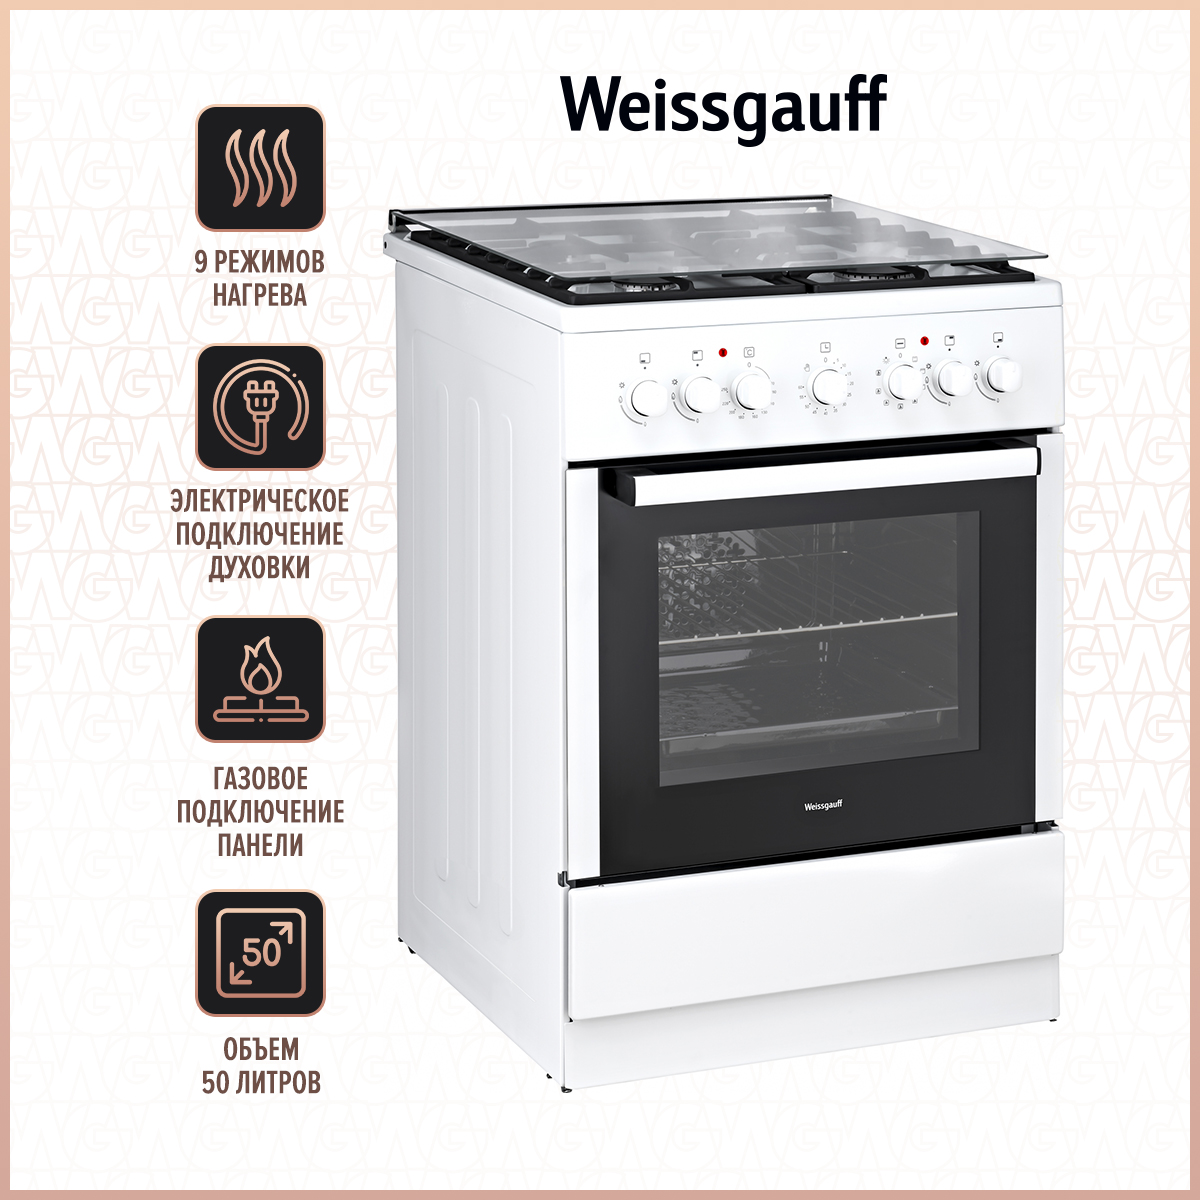 Комбинированная плита Weissgauff WCS K1K62 WGM White комбинированная плита weissgauff wcs k1k62 wgm white